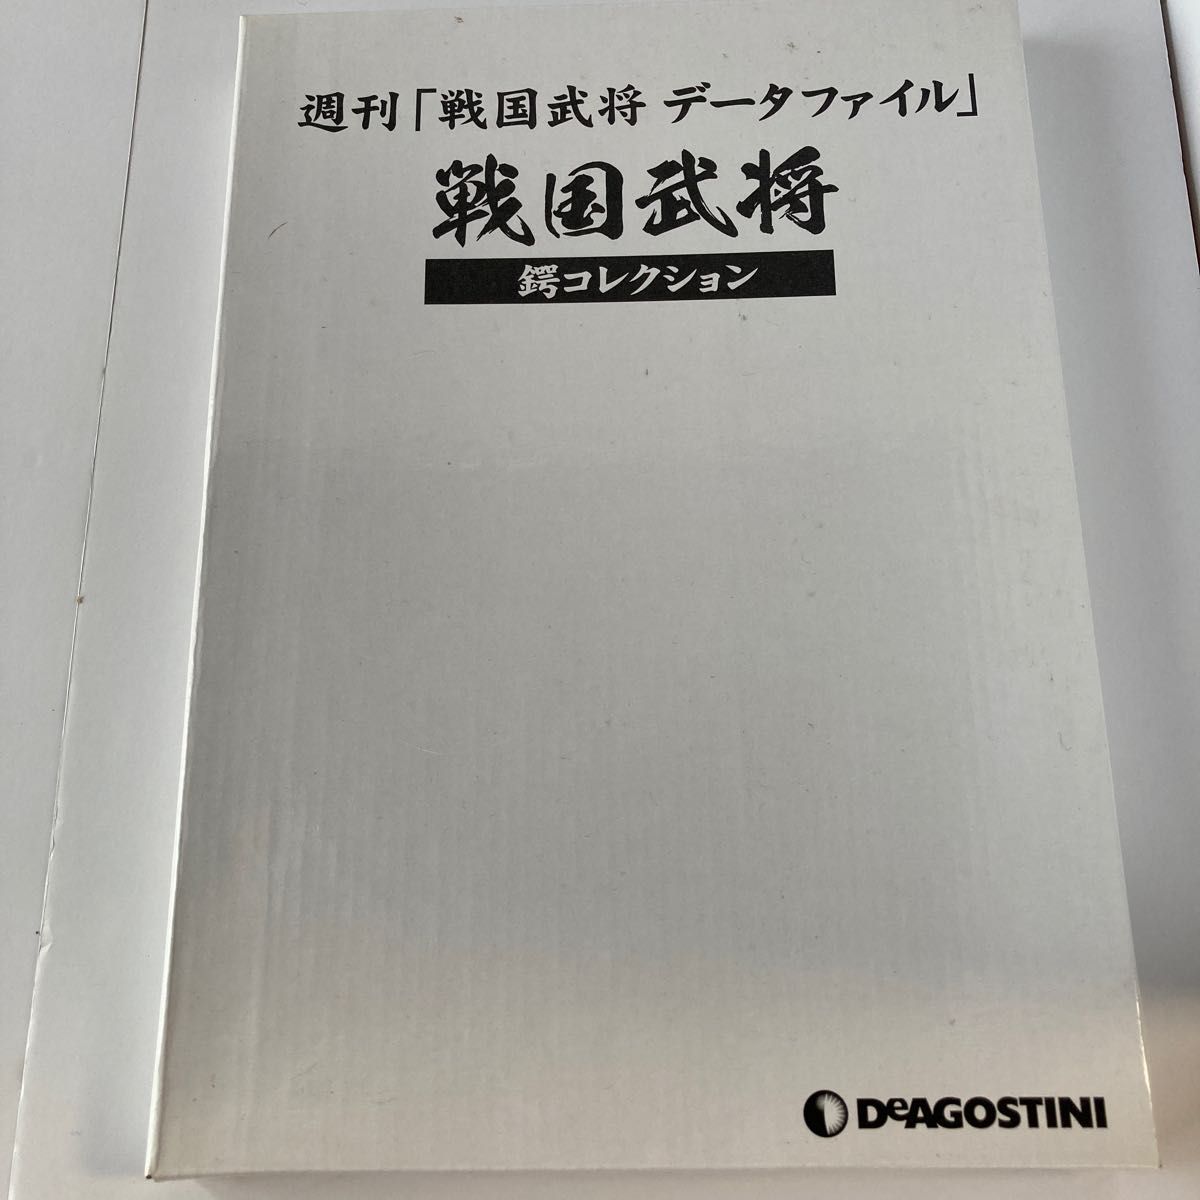 デアゴスティーニ 週刊 戦国武将データファイル - 人文/社会